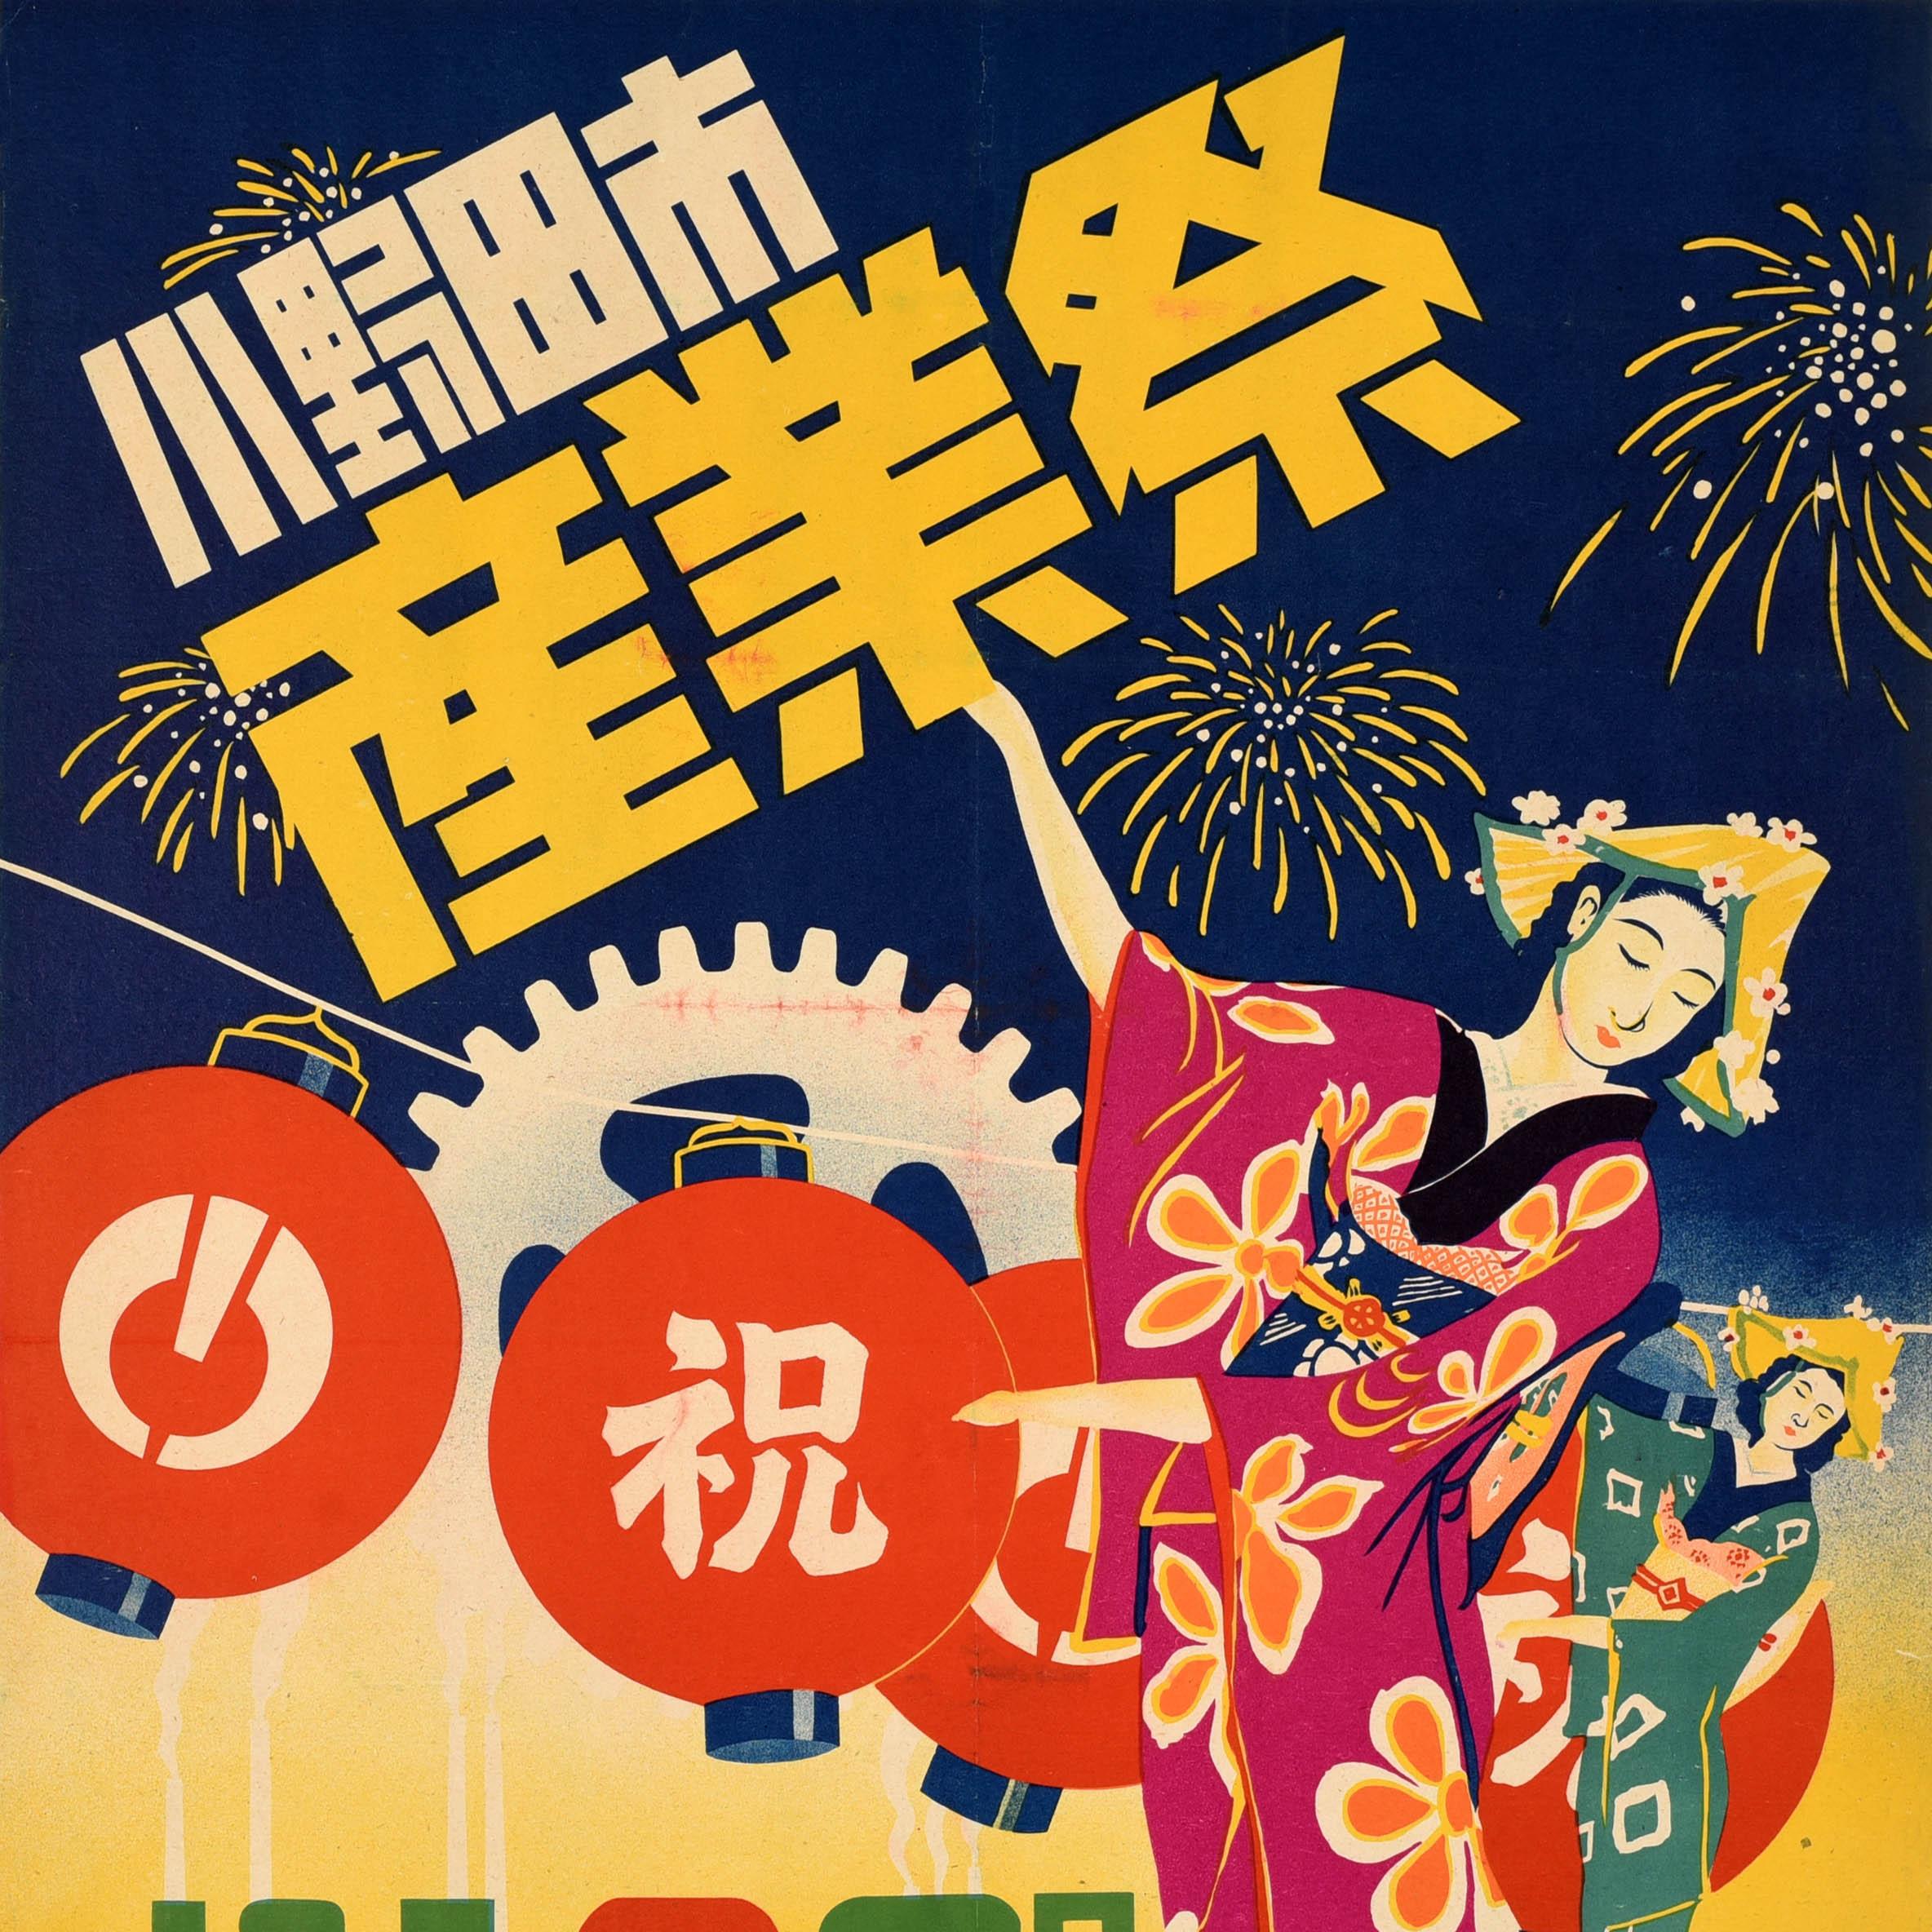 Originelles Werbeplakat für das Onoda City Industrial Festival mit farbenfrohen Motiven, die Damen in traditioneller japanischer Kleidung mit Blumen in ihren Hüten zeigen, die vor roten Laternen tanzen, während im Hintergrund ein Feuerwerk